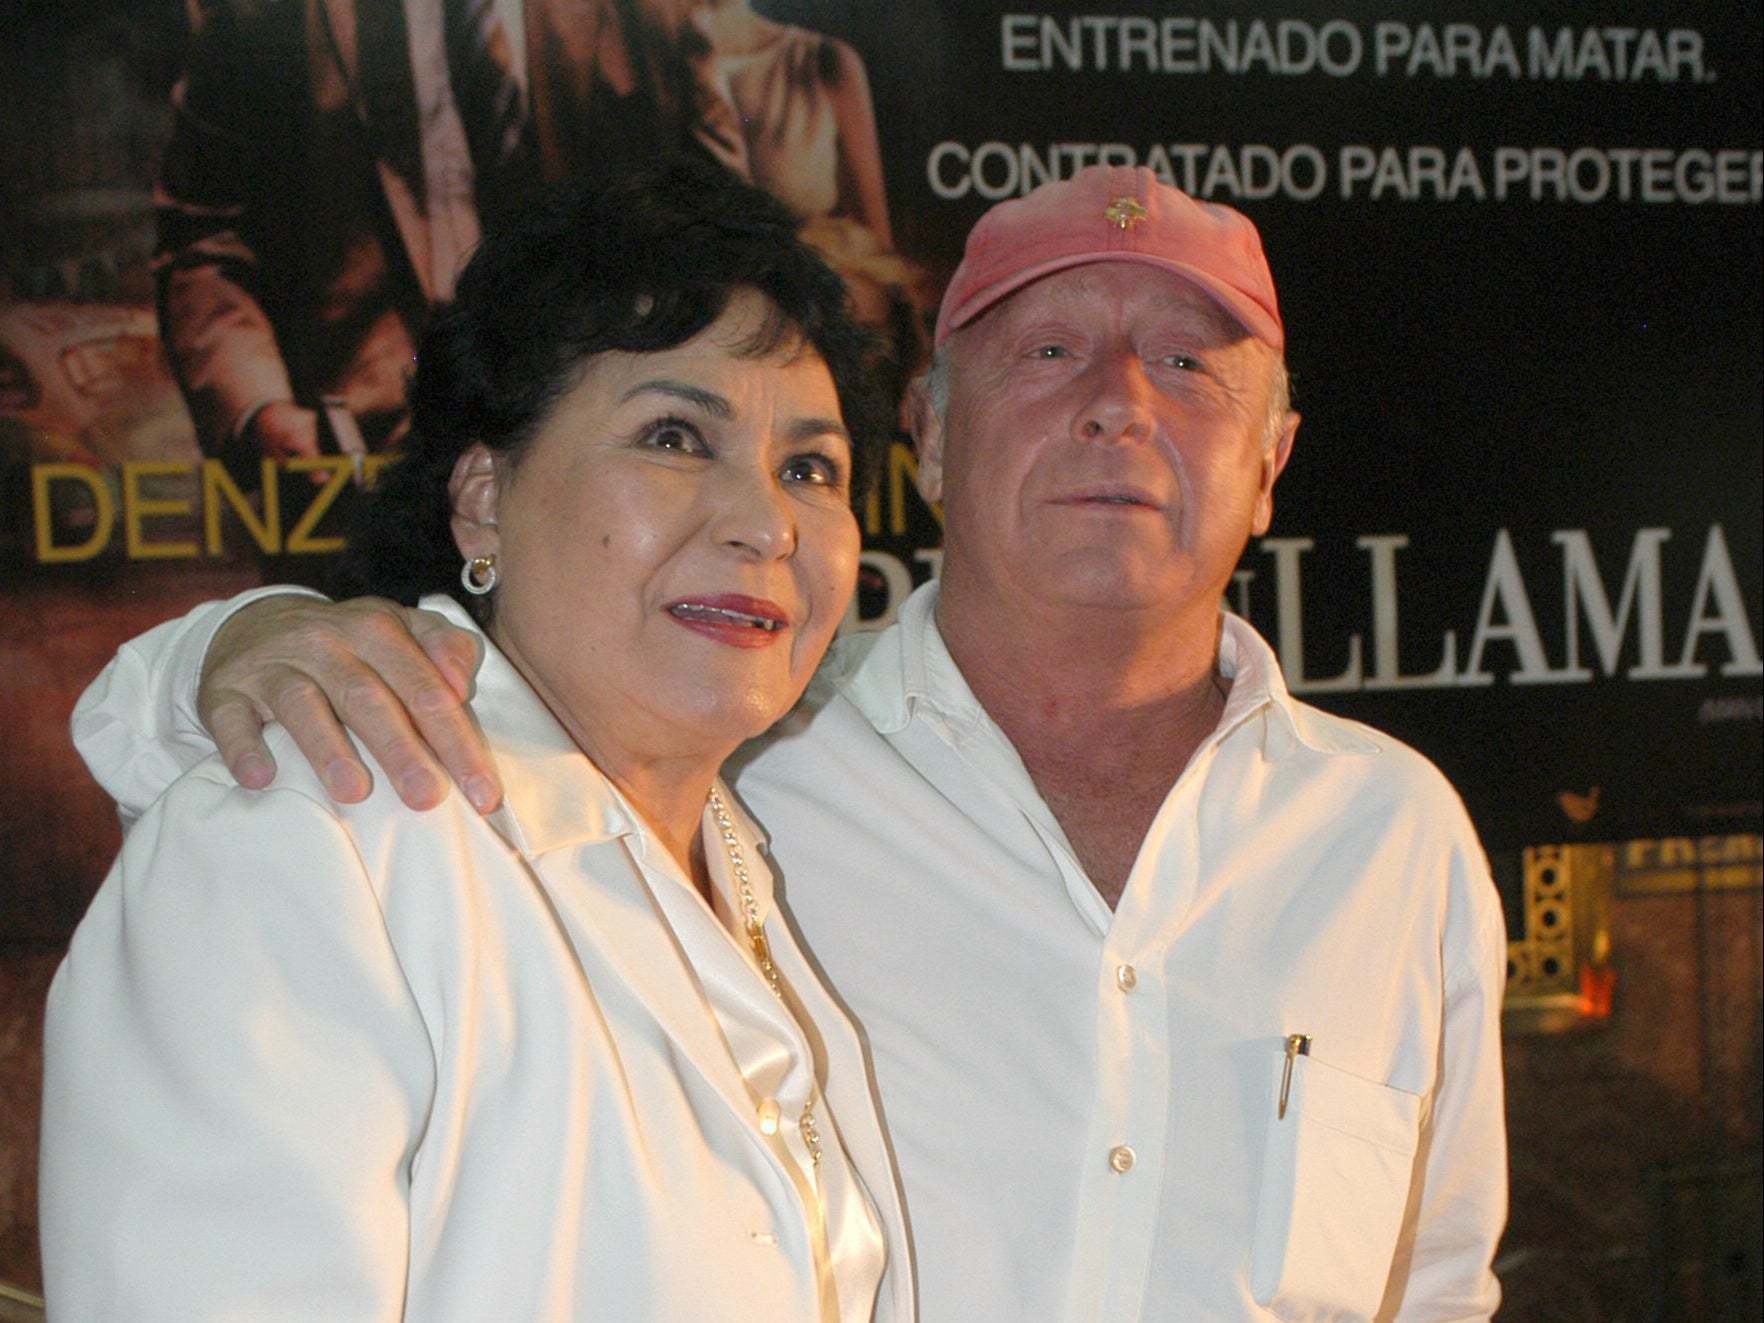 El director de cine británico Tony Scott (derecha) posa con la actriz mexicana Carmen Salinas el lunes 9 de agosto de 2004 durante la alfombra roja del estreno de Man on Fire . Salinas empleó una peluca utilizada durante el rodaje de la cinta para vacunarse de incógnito.